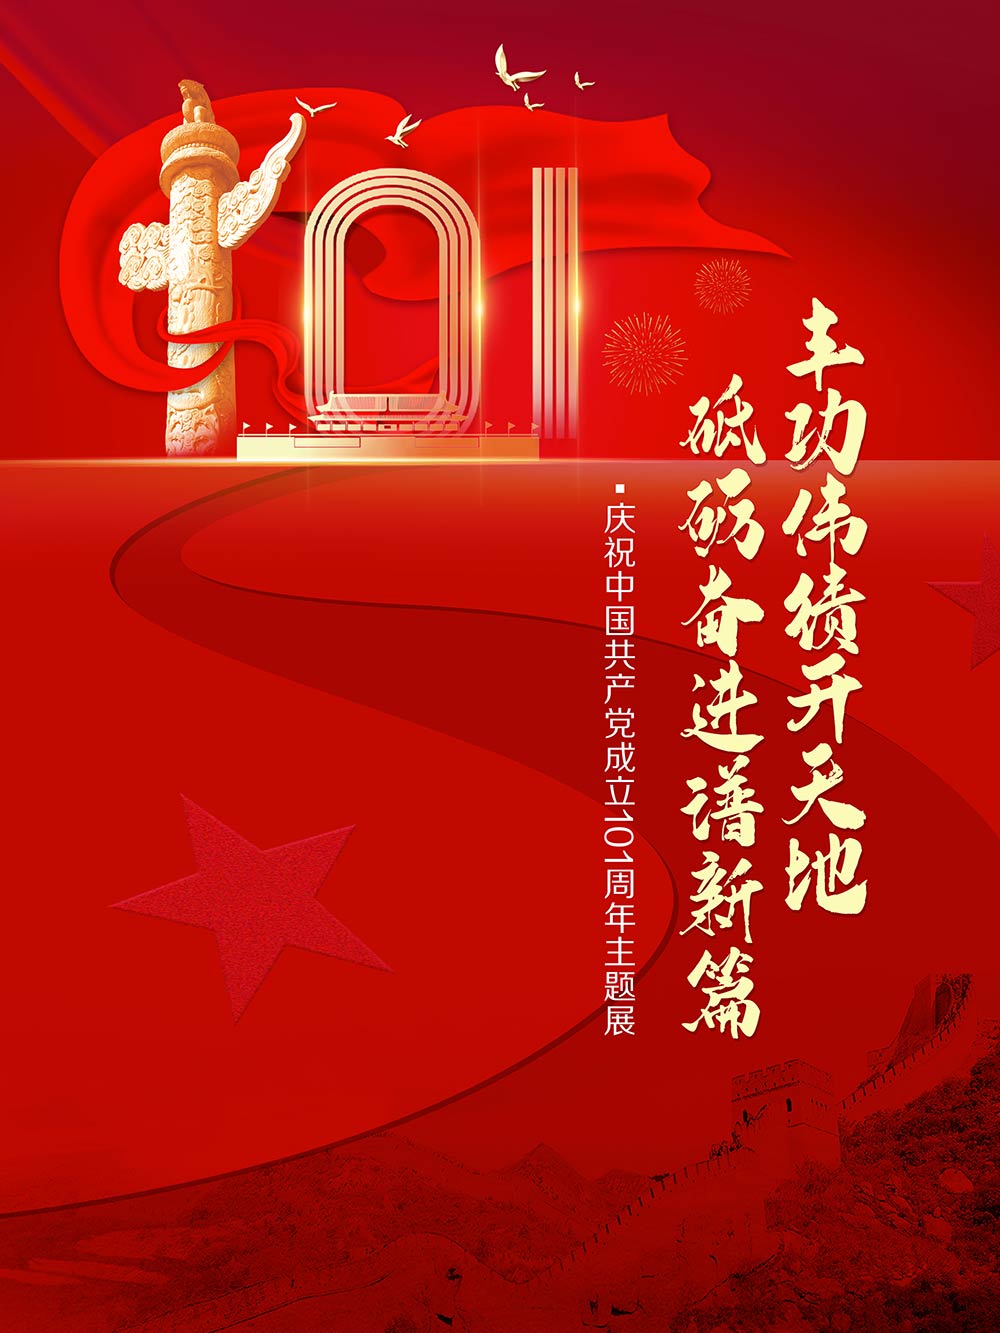 丰功伟绩开天地 砥砺奋进谱新篇―庆祝中国共产党成立101周年主题展